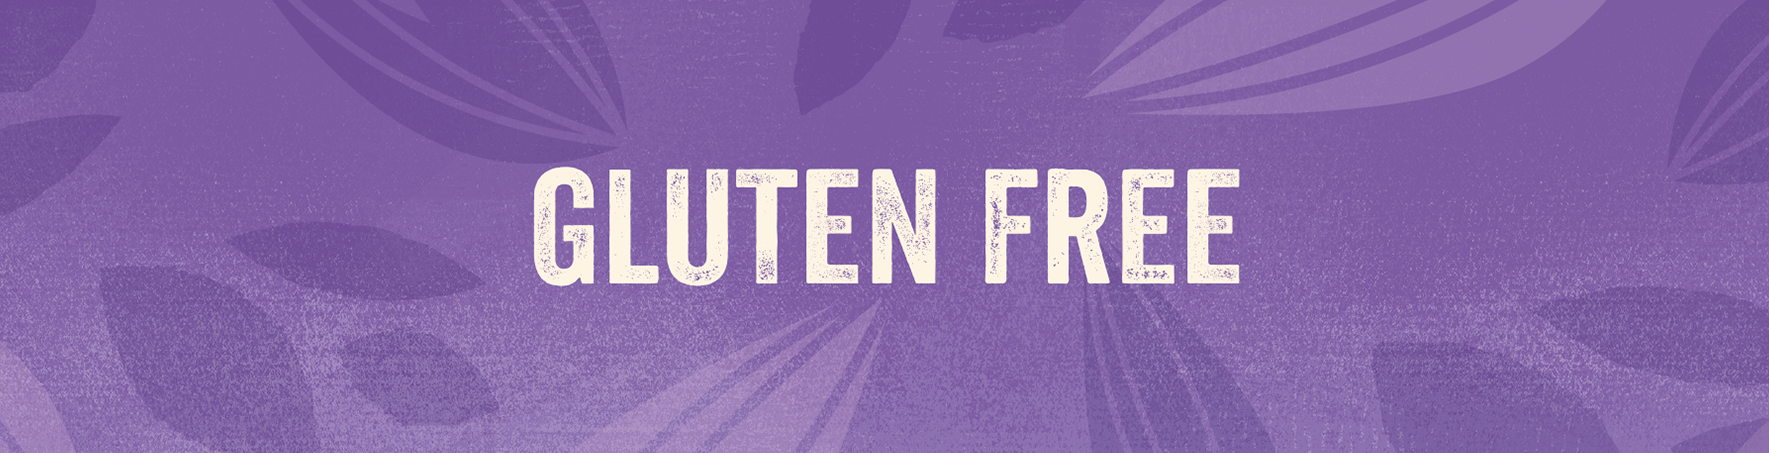 Gluten free oats